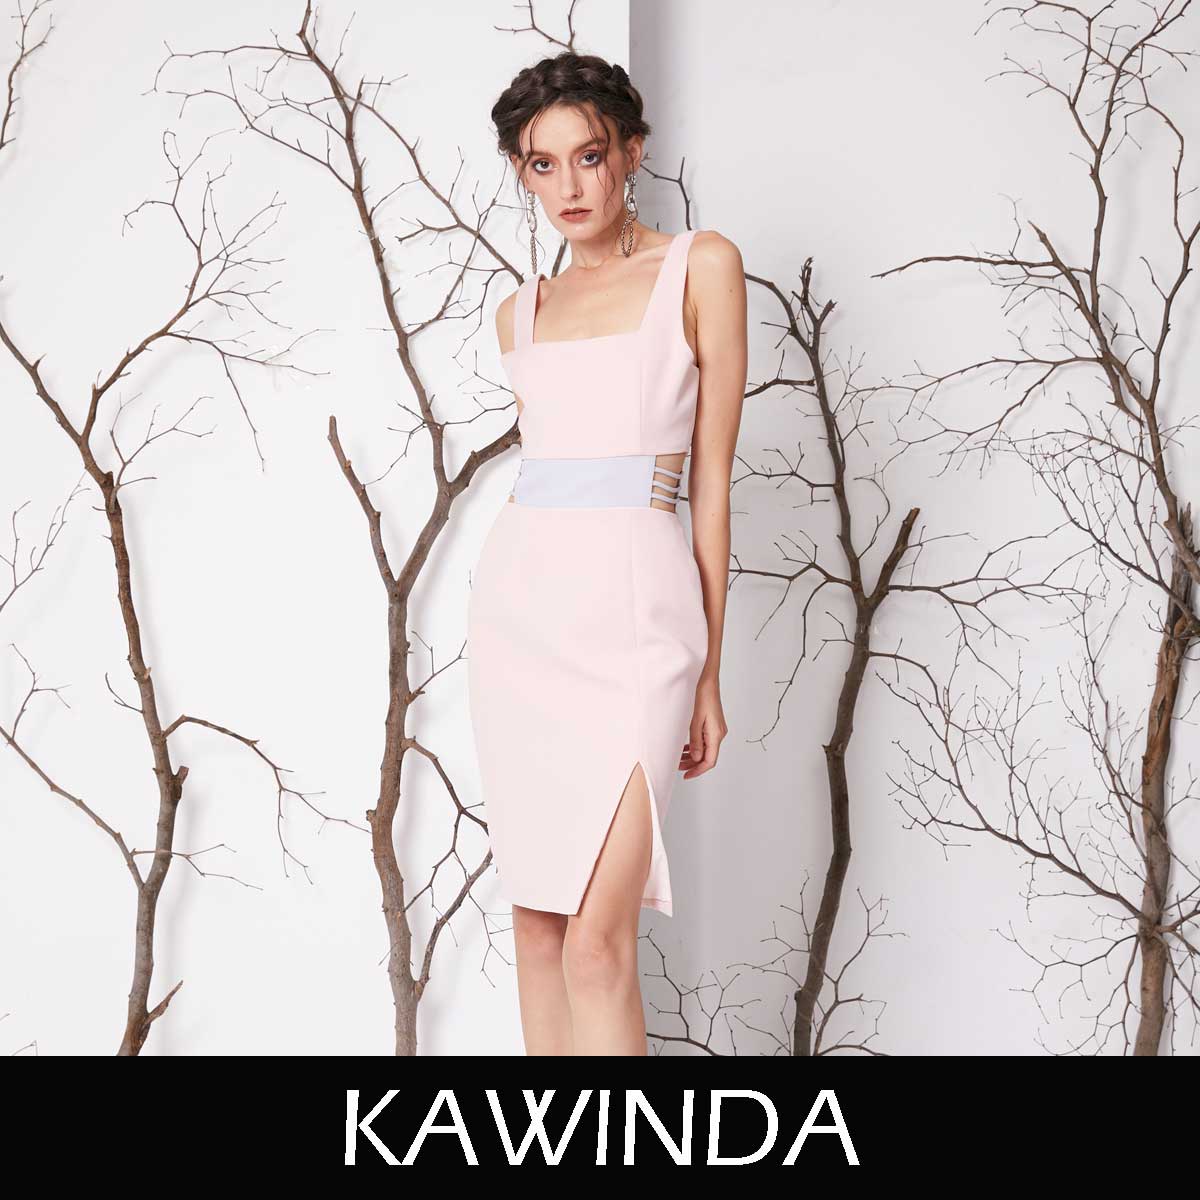 ช้อป KAWINDA ออนไลน์ หลากหลายสินค้ายอดนิยม | lazada.co.th